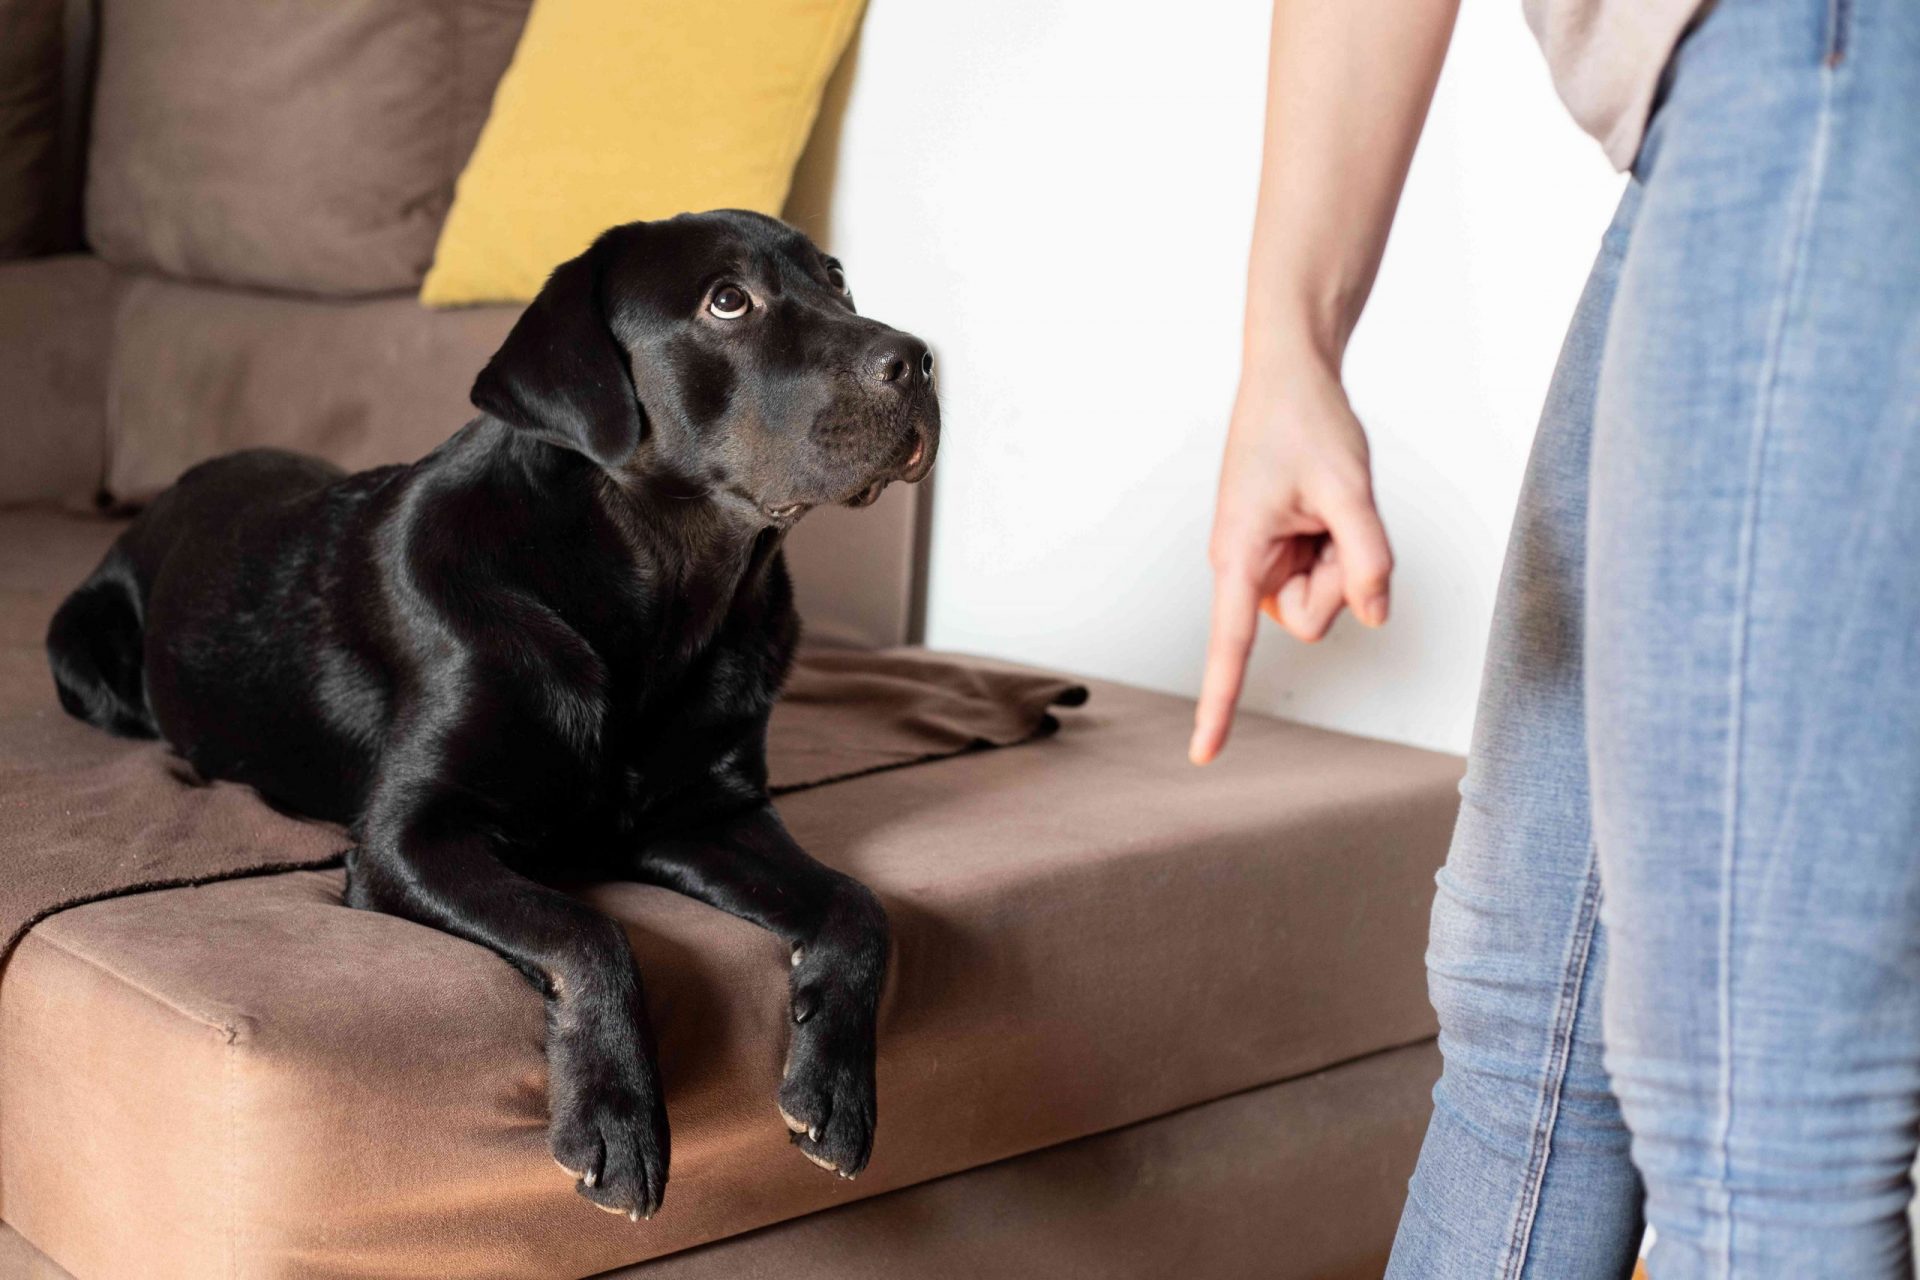 una persona ordena al perro que se levante del sofá mientras el perro parece confundido